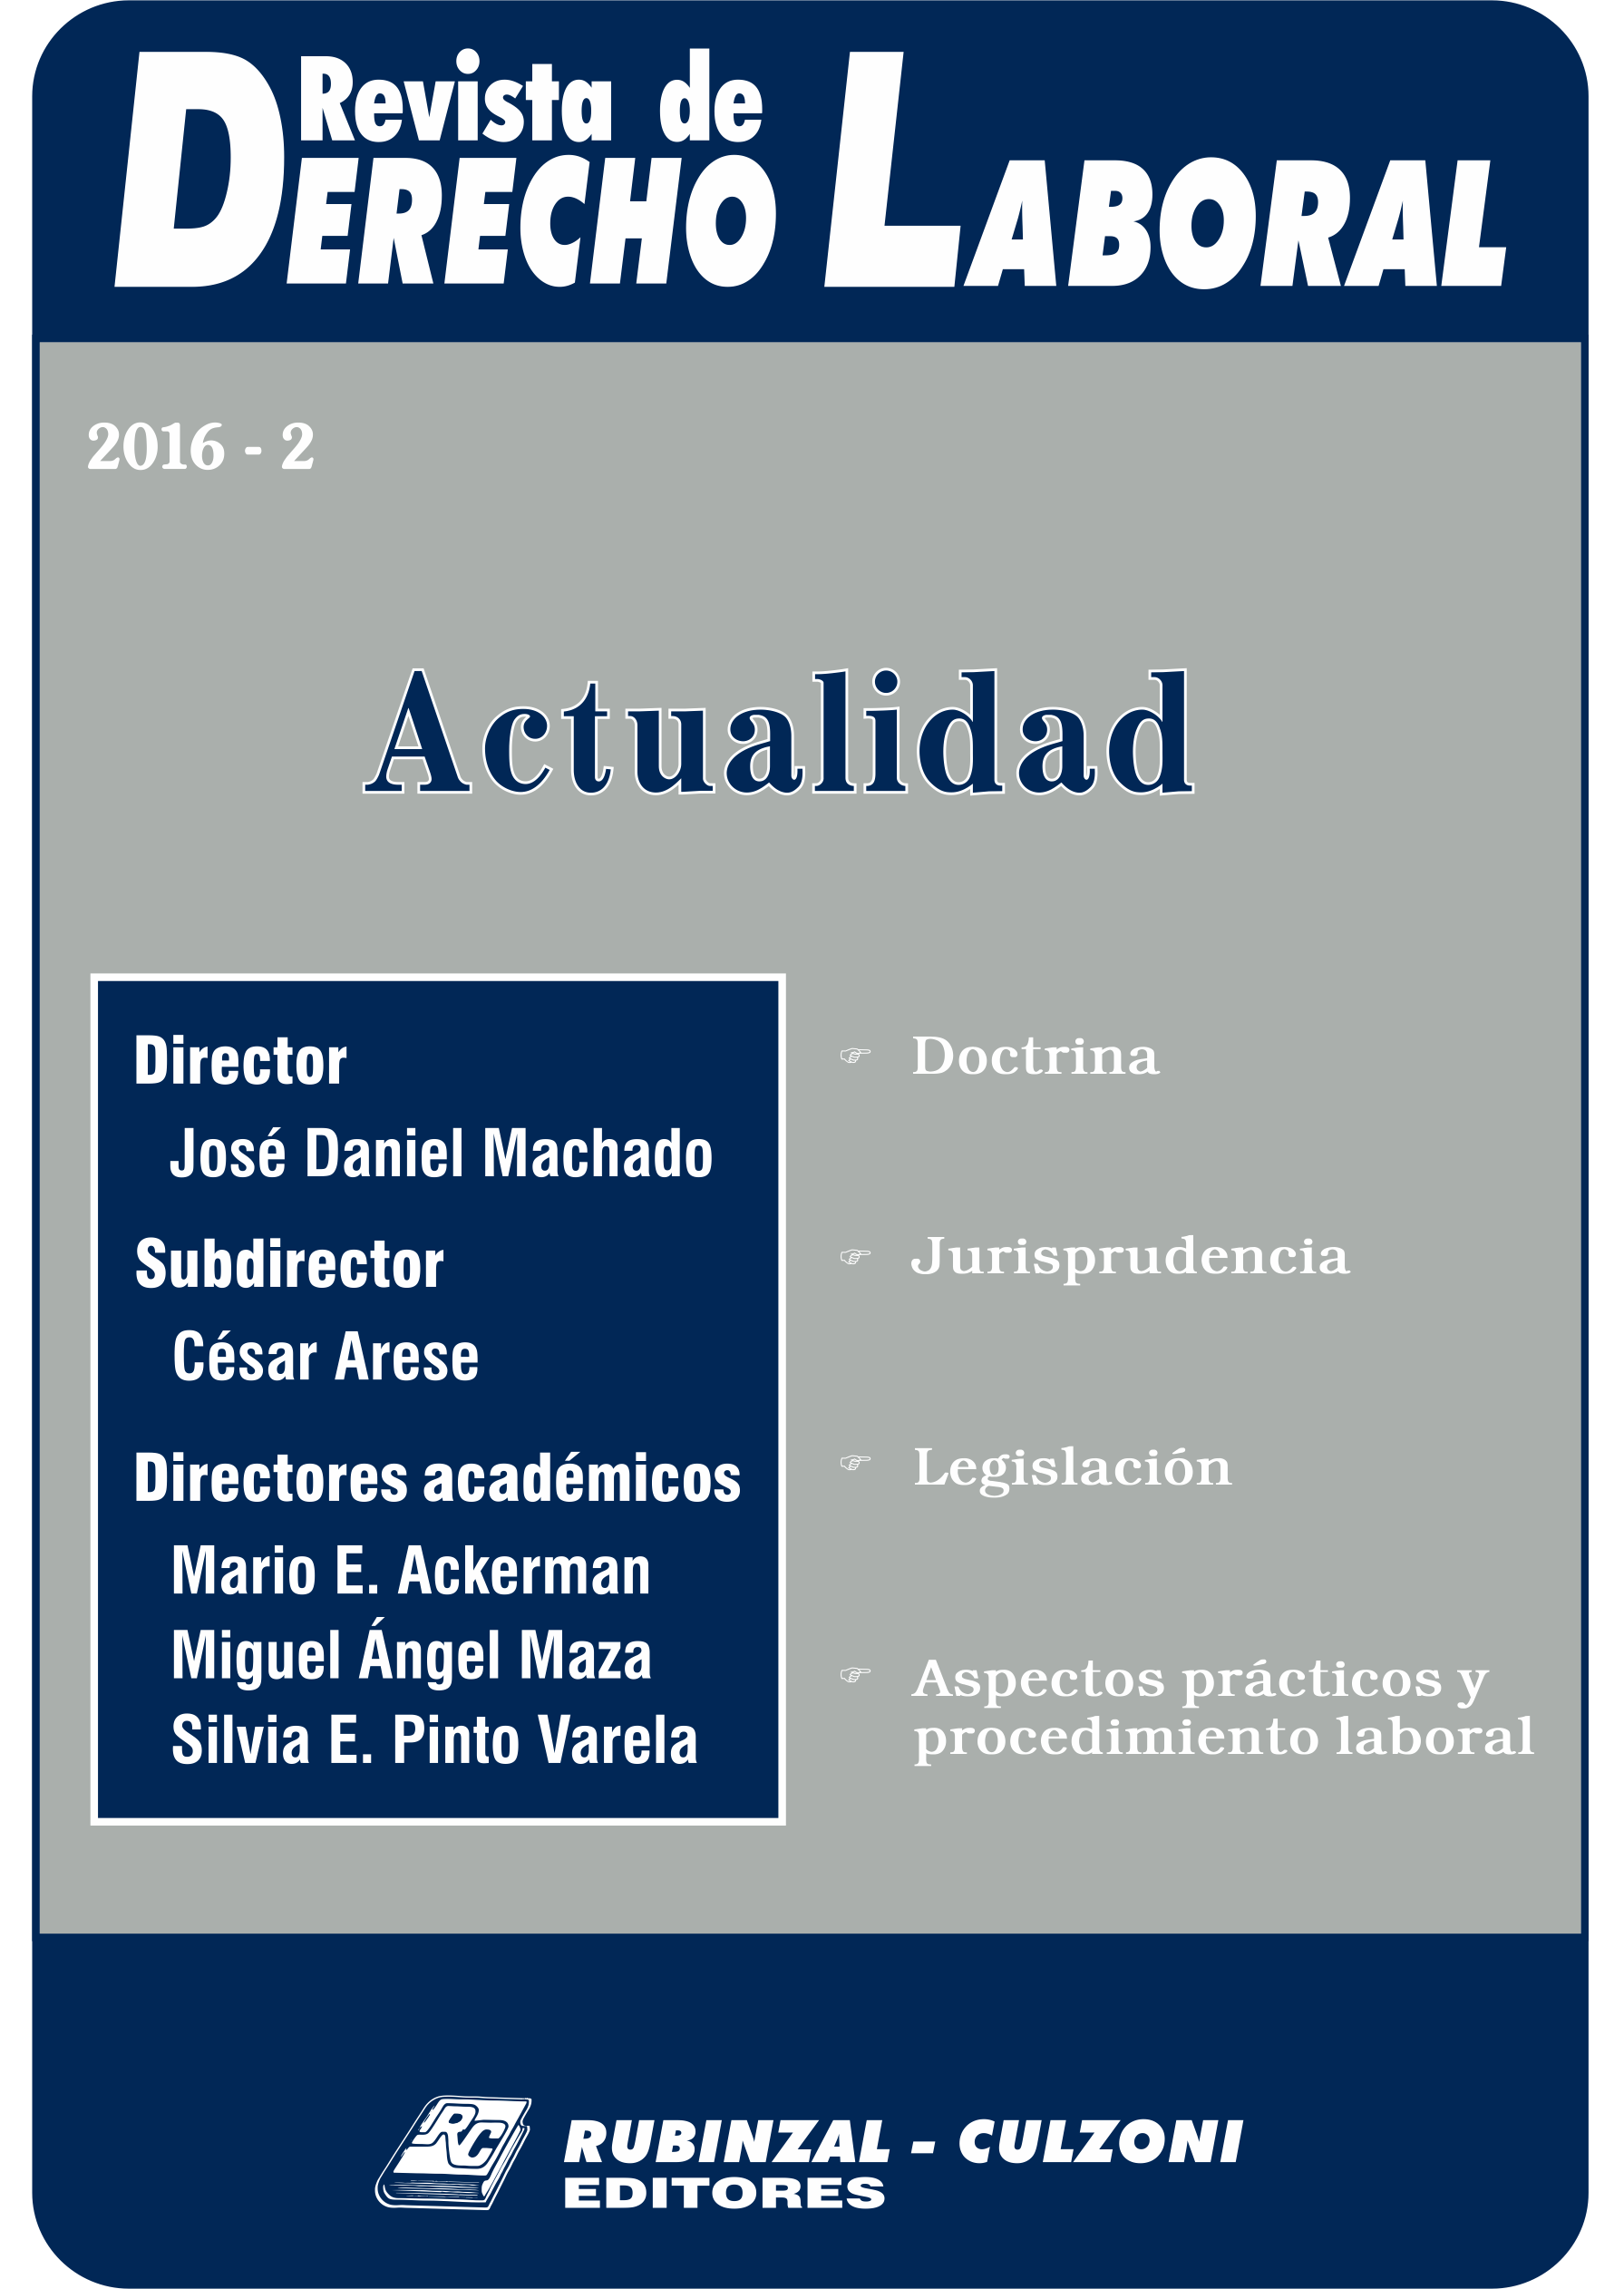 Revista de Derecho Laboral Actualidad - Año 2016 - 2